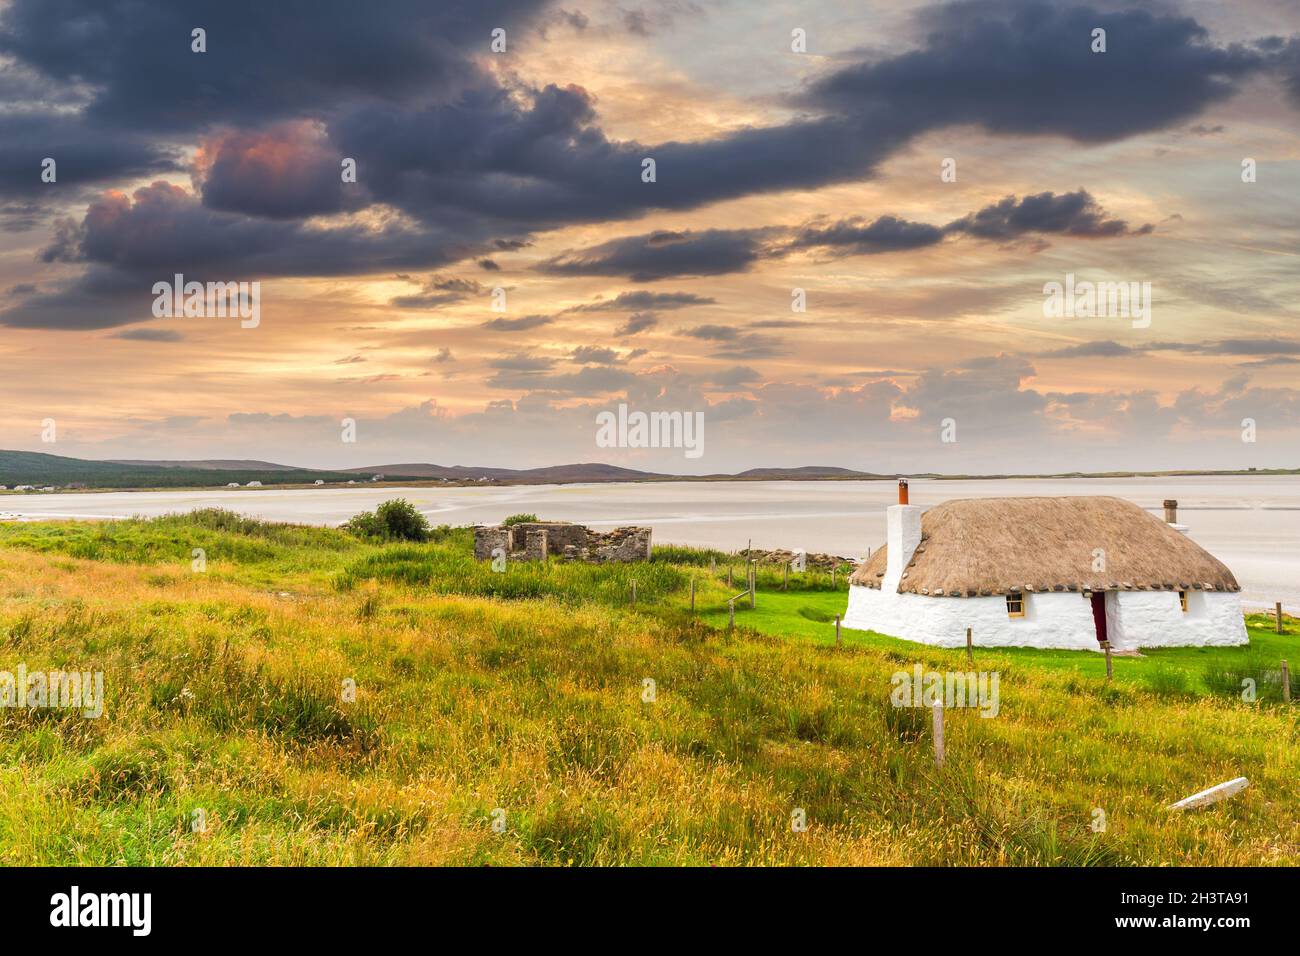 Traditionell gebaute weiße Hütte mit Strohdach, neben der türkisfarbenen Bucht, mit stürmischen bewölkten dunklen Himmel über.Insel North Uist, Schottland Stockfoto